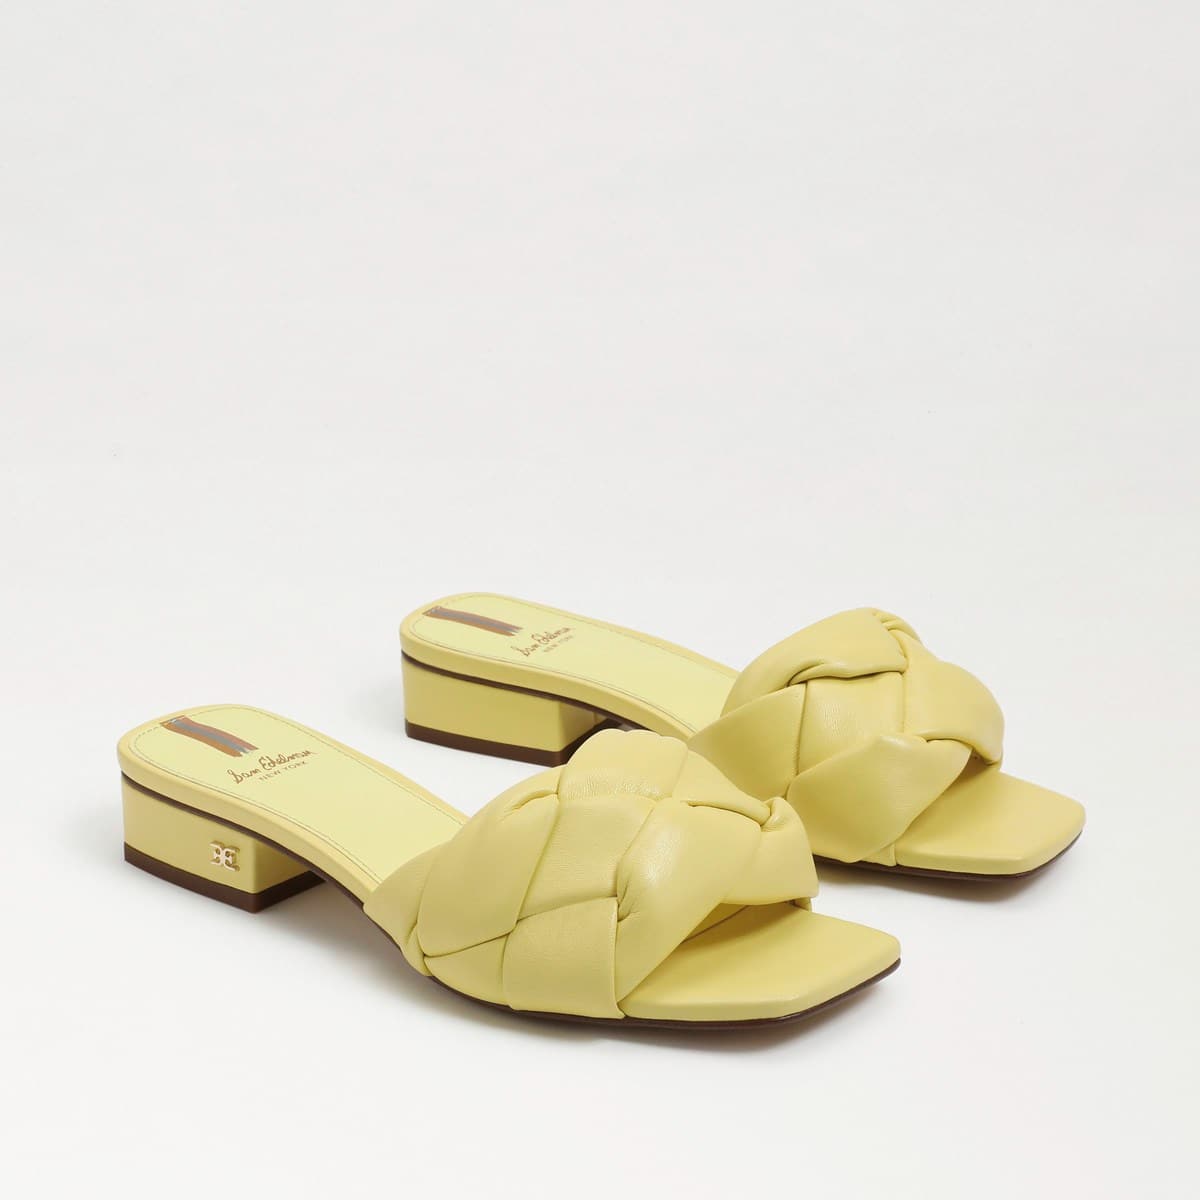 Sam Edelman Dawson Slide Sandal Butter Yellow Leather CiO7Lj7Y